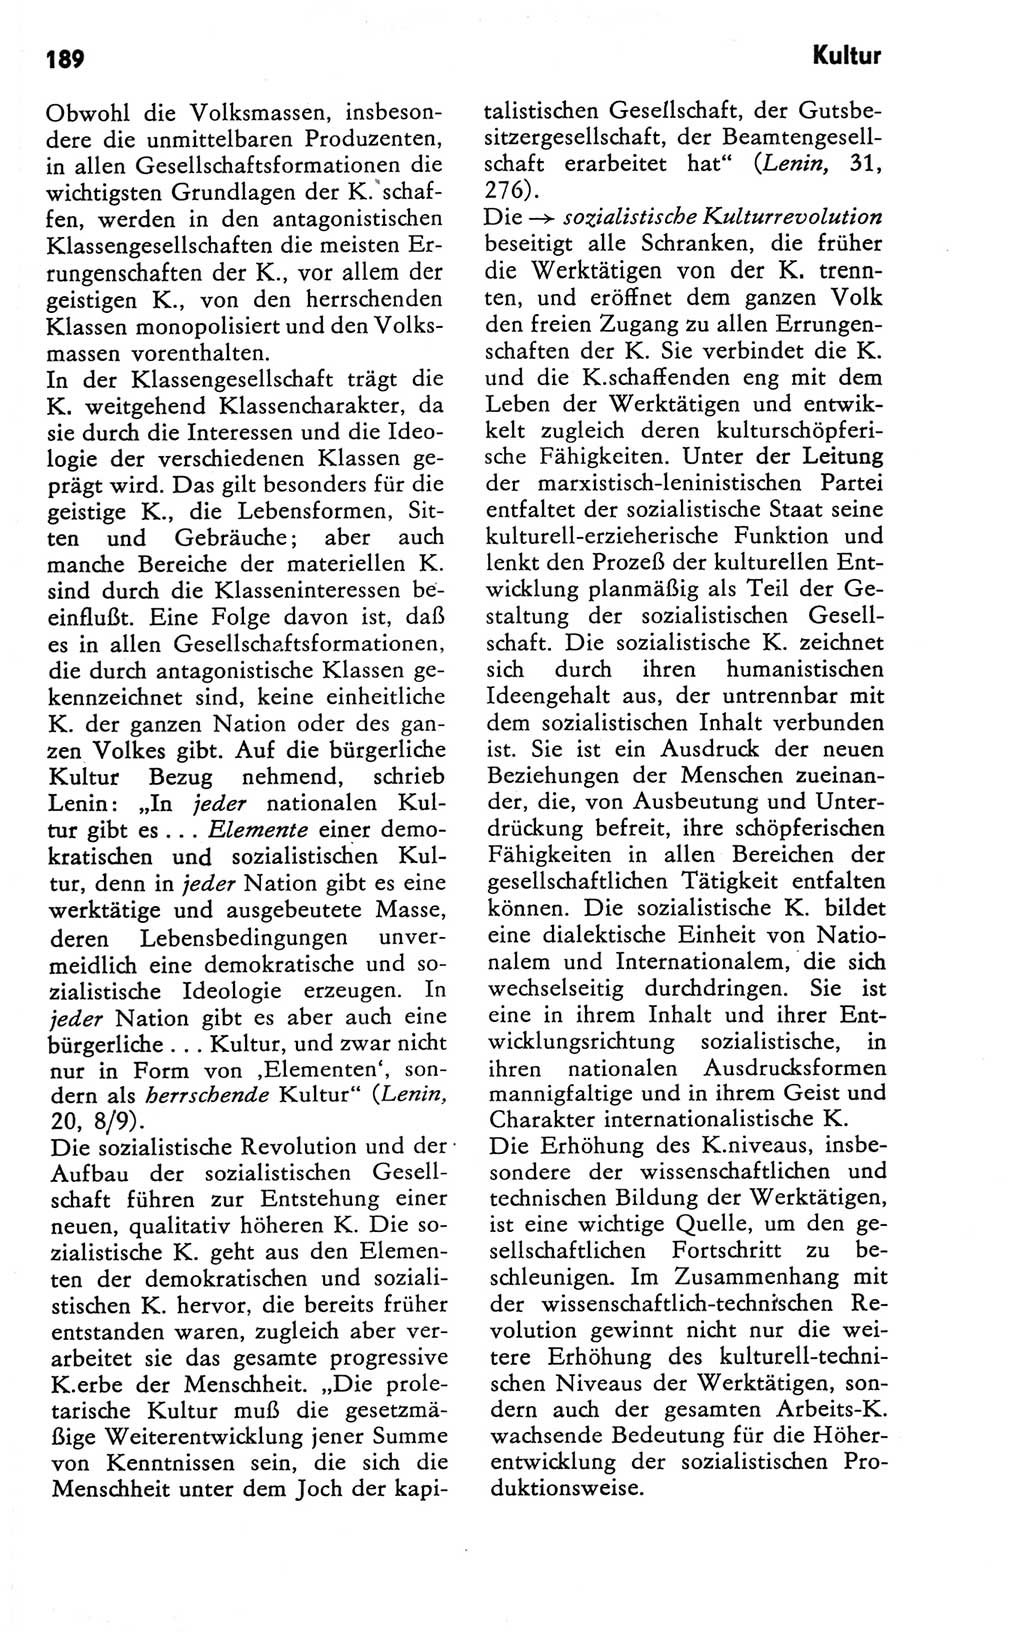 Kleines Wörterbuch der marxistisch-leninistischen Philosophie [Deutsche Demokratische Republik (DDR)] 1981, Seite 189 (Kl. Wb. ML Phil. DDR 1981, S. 189)